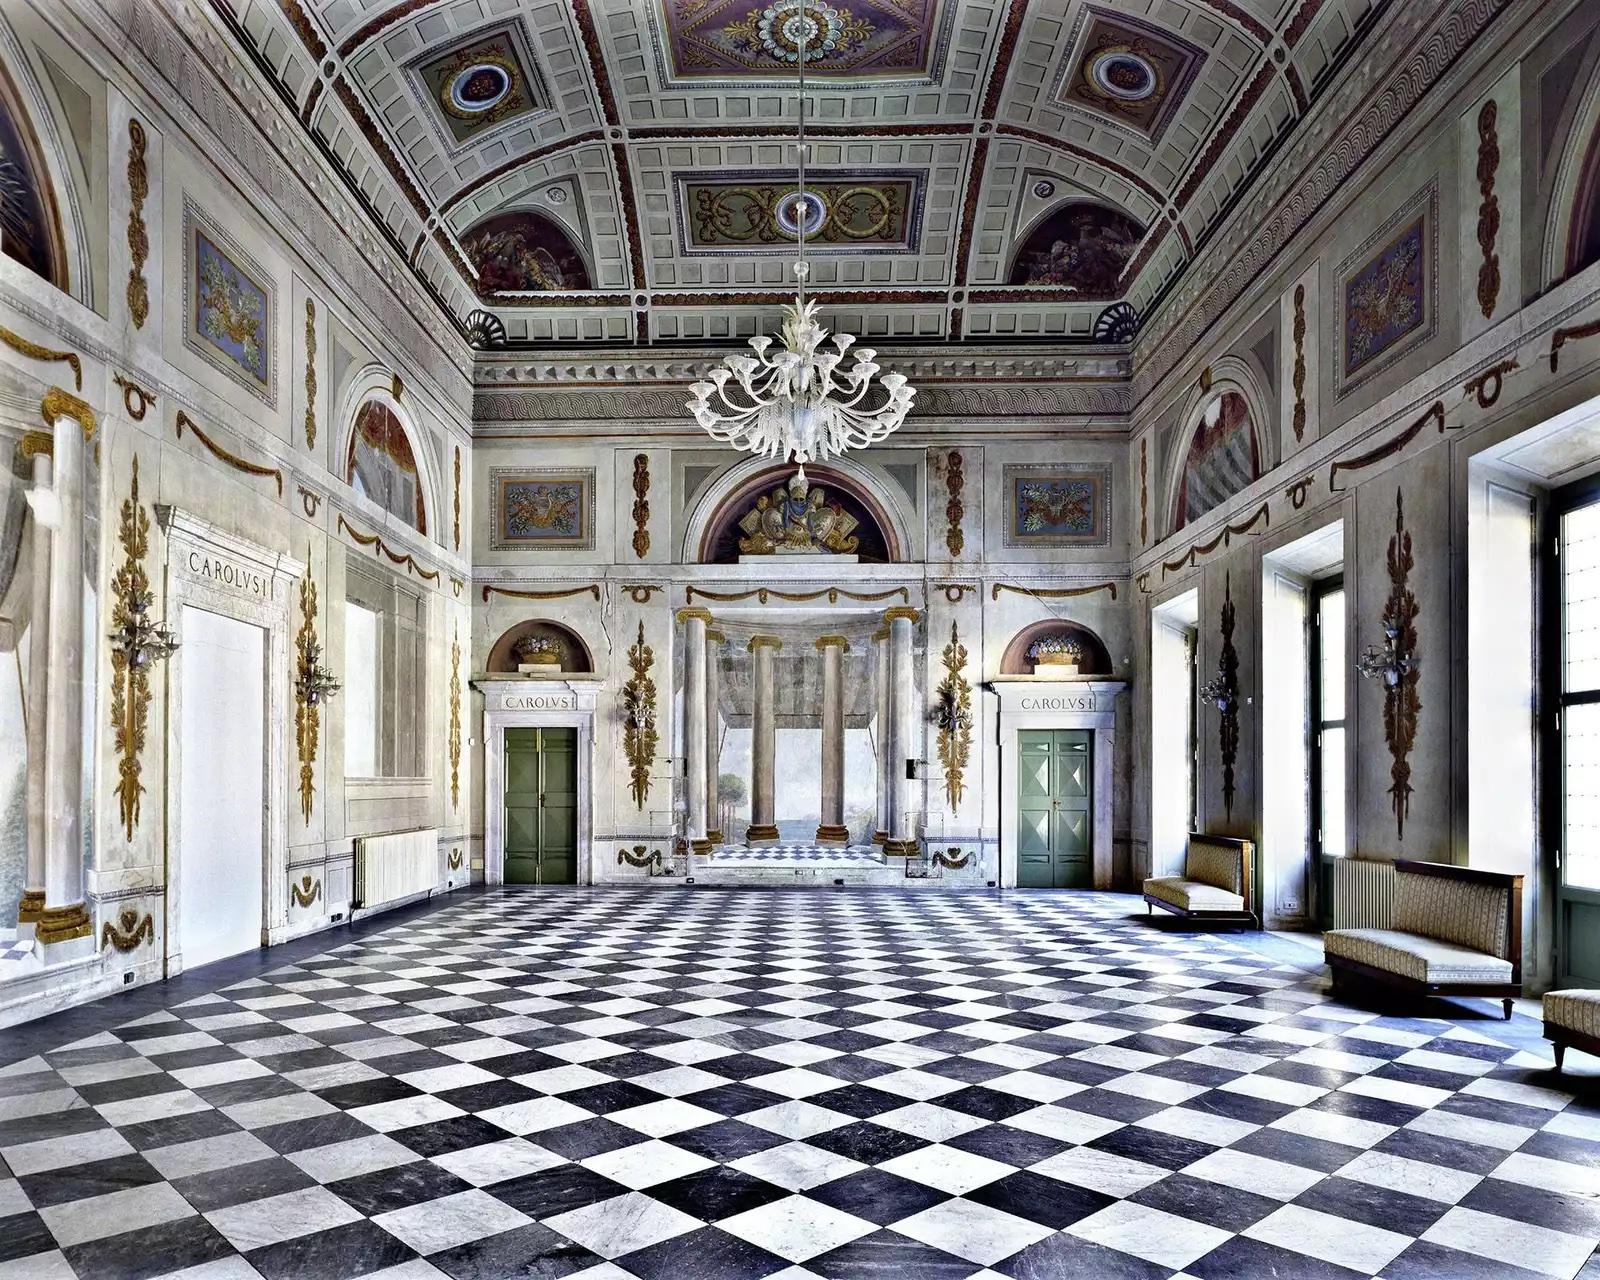 Palazzo Ducale, Massa, Italie, 1999
Tirage chromogène
120 x 150 cm
Edition de 5

Italien, né en 1954 à Florence, Italie, basé à Florence, Italie Massimo Listri parcourt son Italie natale et le monde avec son appareil photo, photographiant de grands